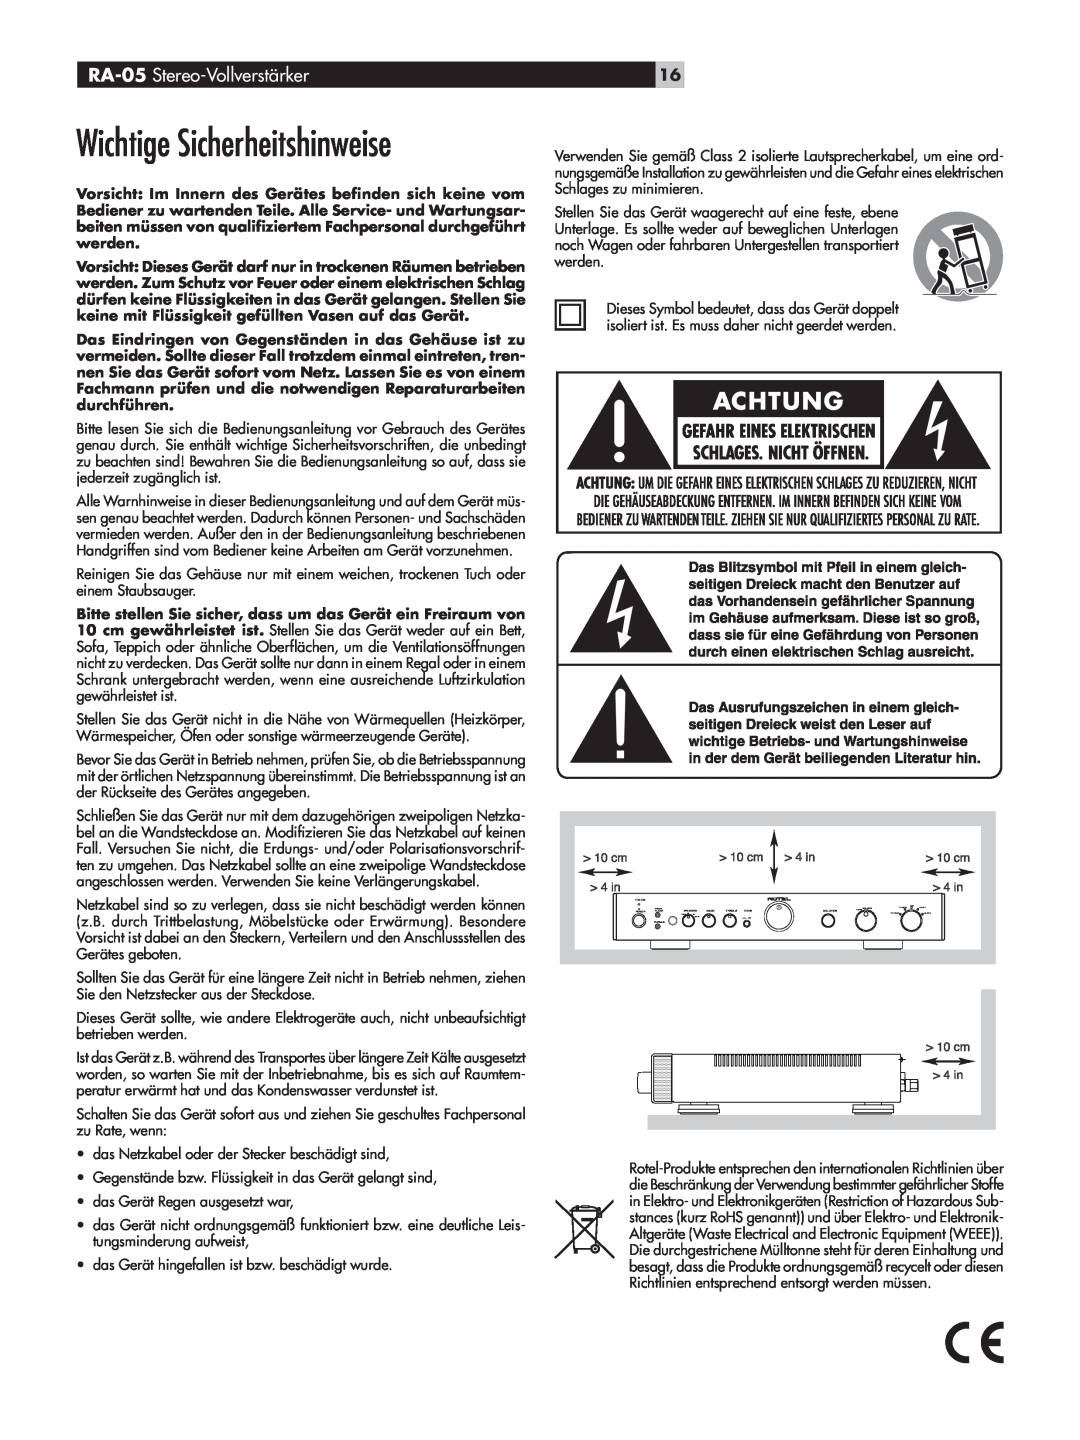 Rotel owner manual Wichtige Sicherheitshinweise, RA-05 Stereo-Vollverstärker 